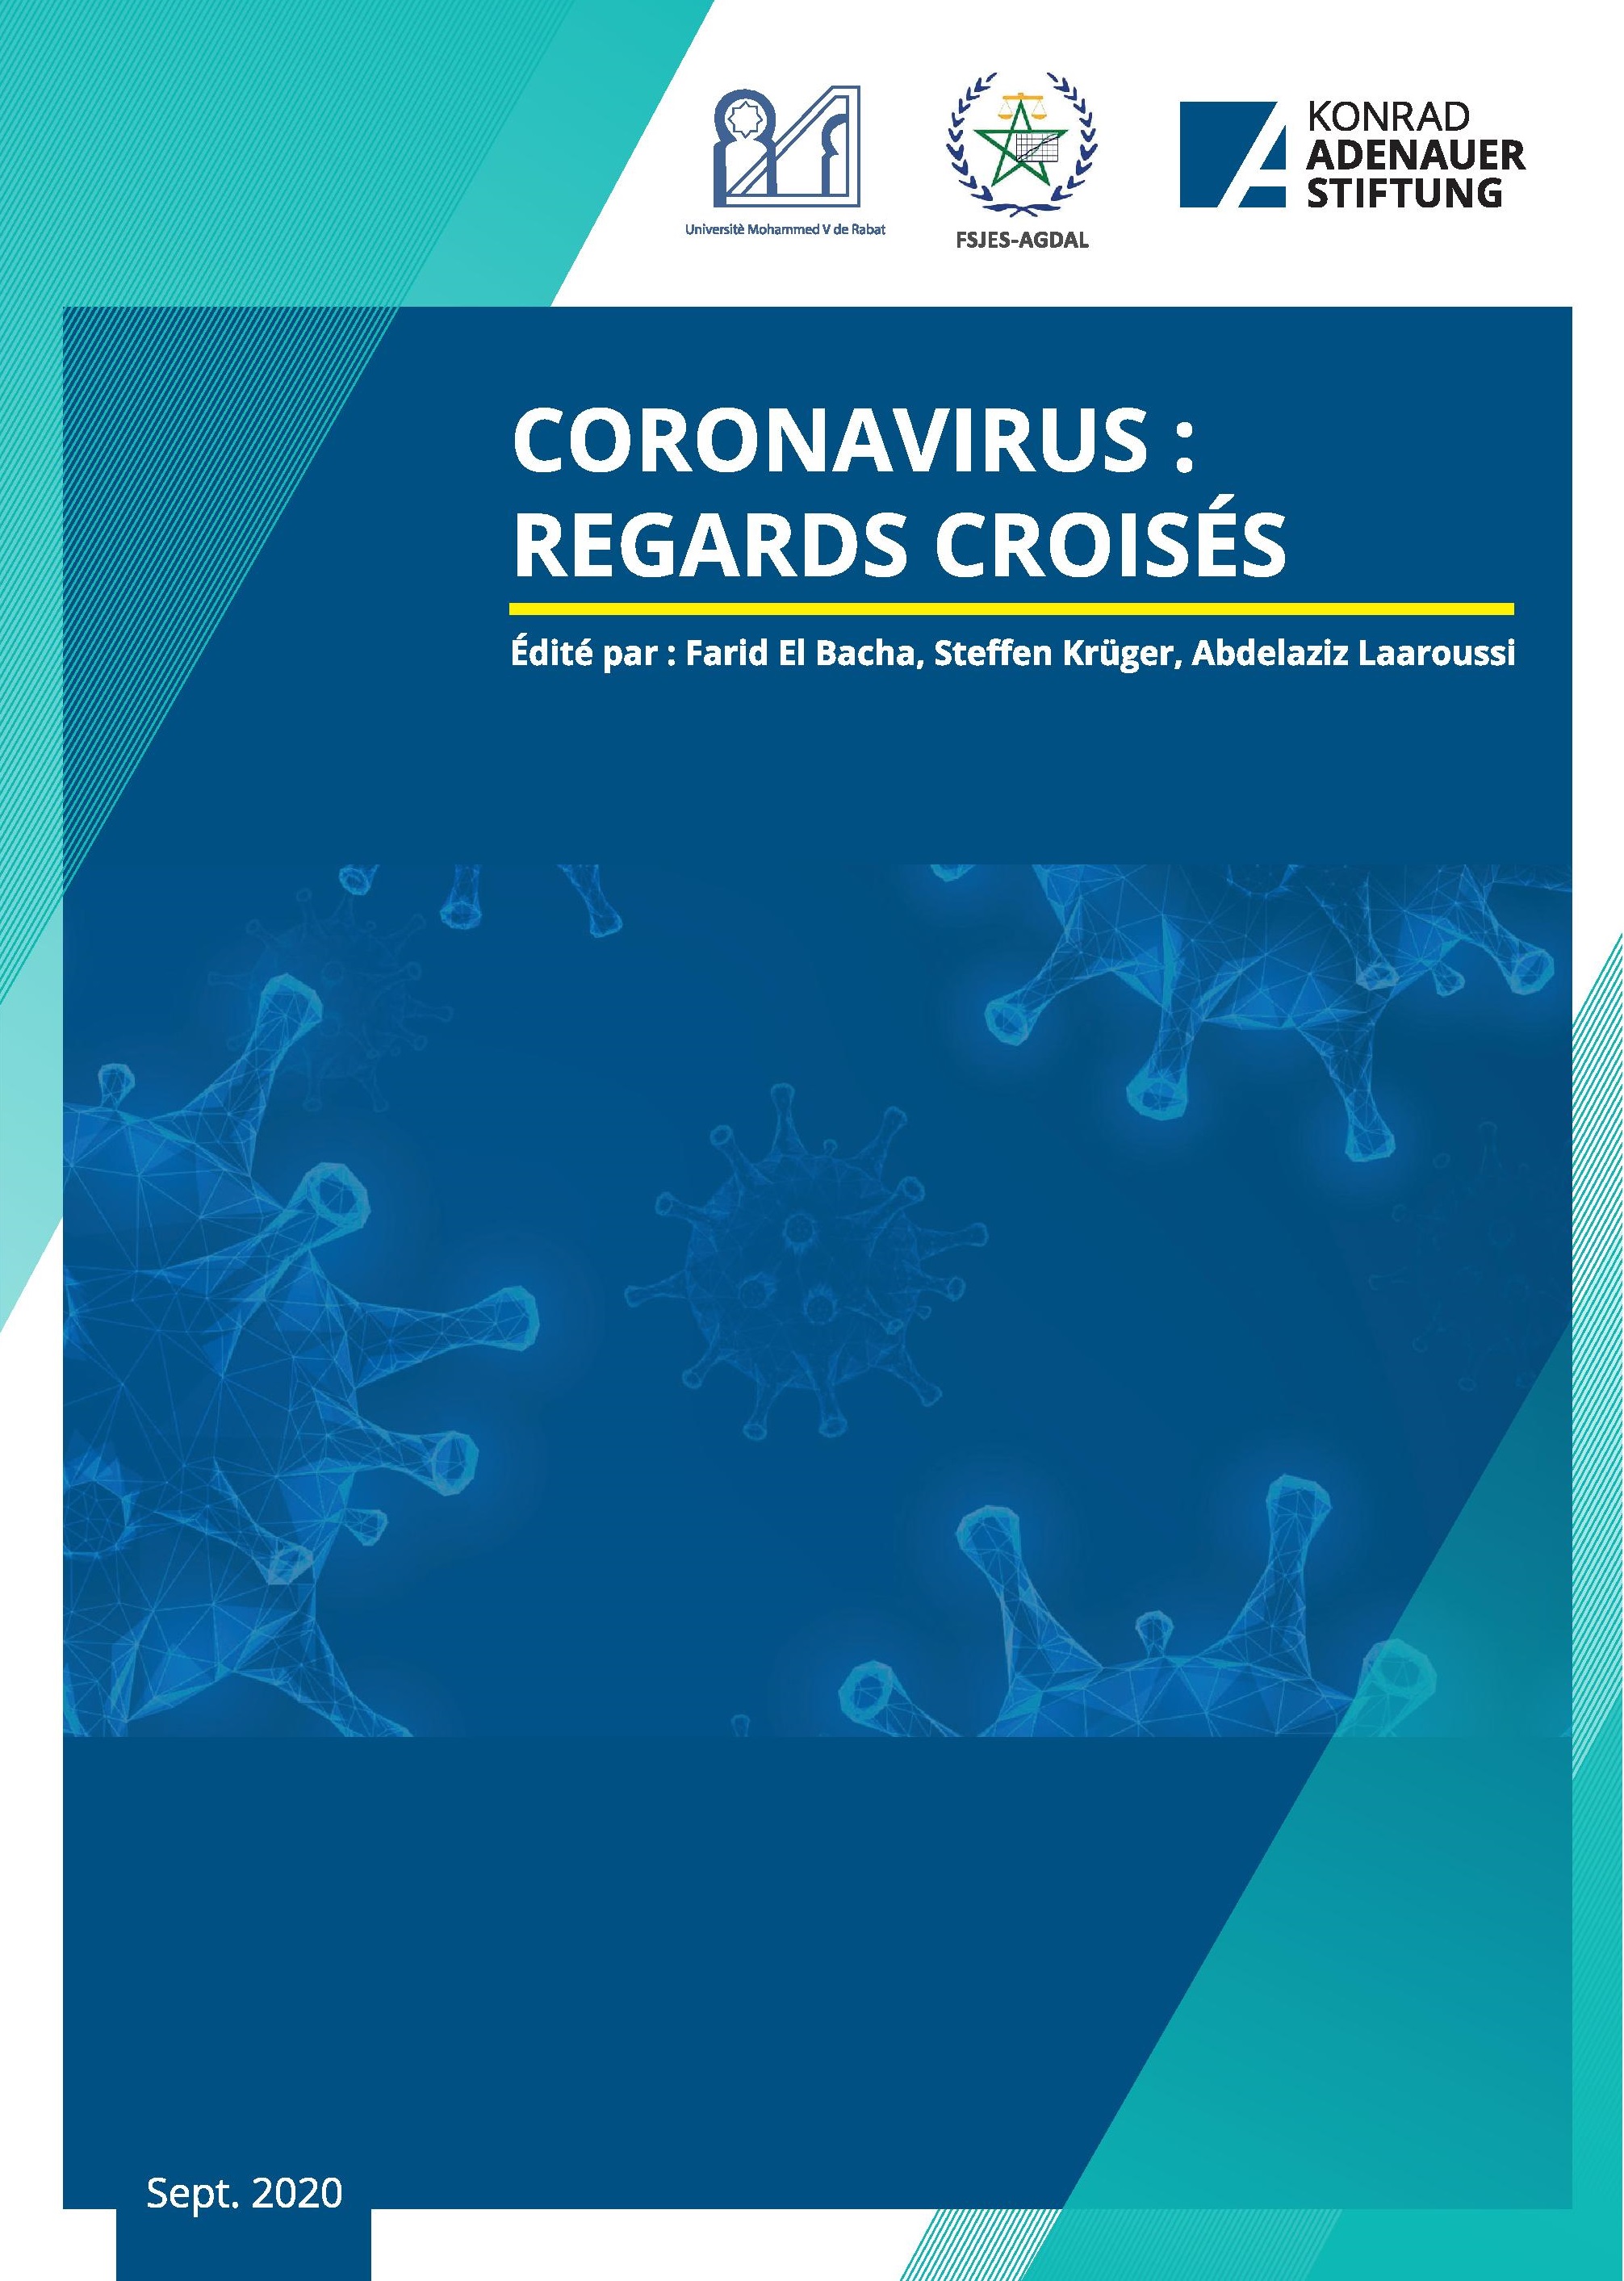 CORONAVIRUS: REGARDS CROISES 